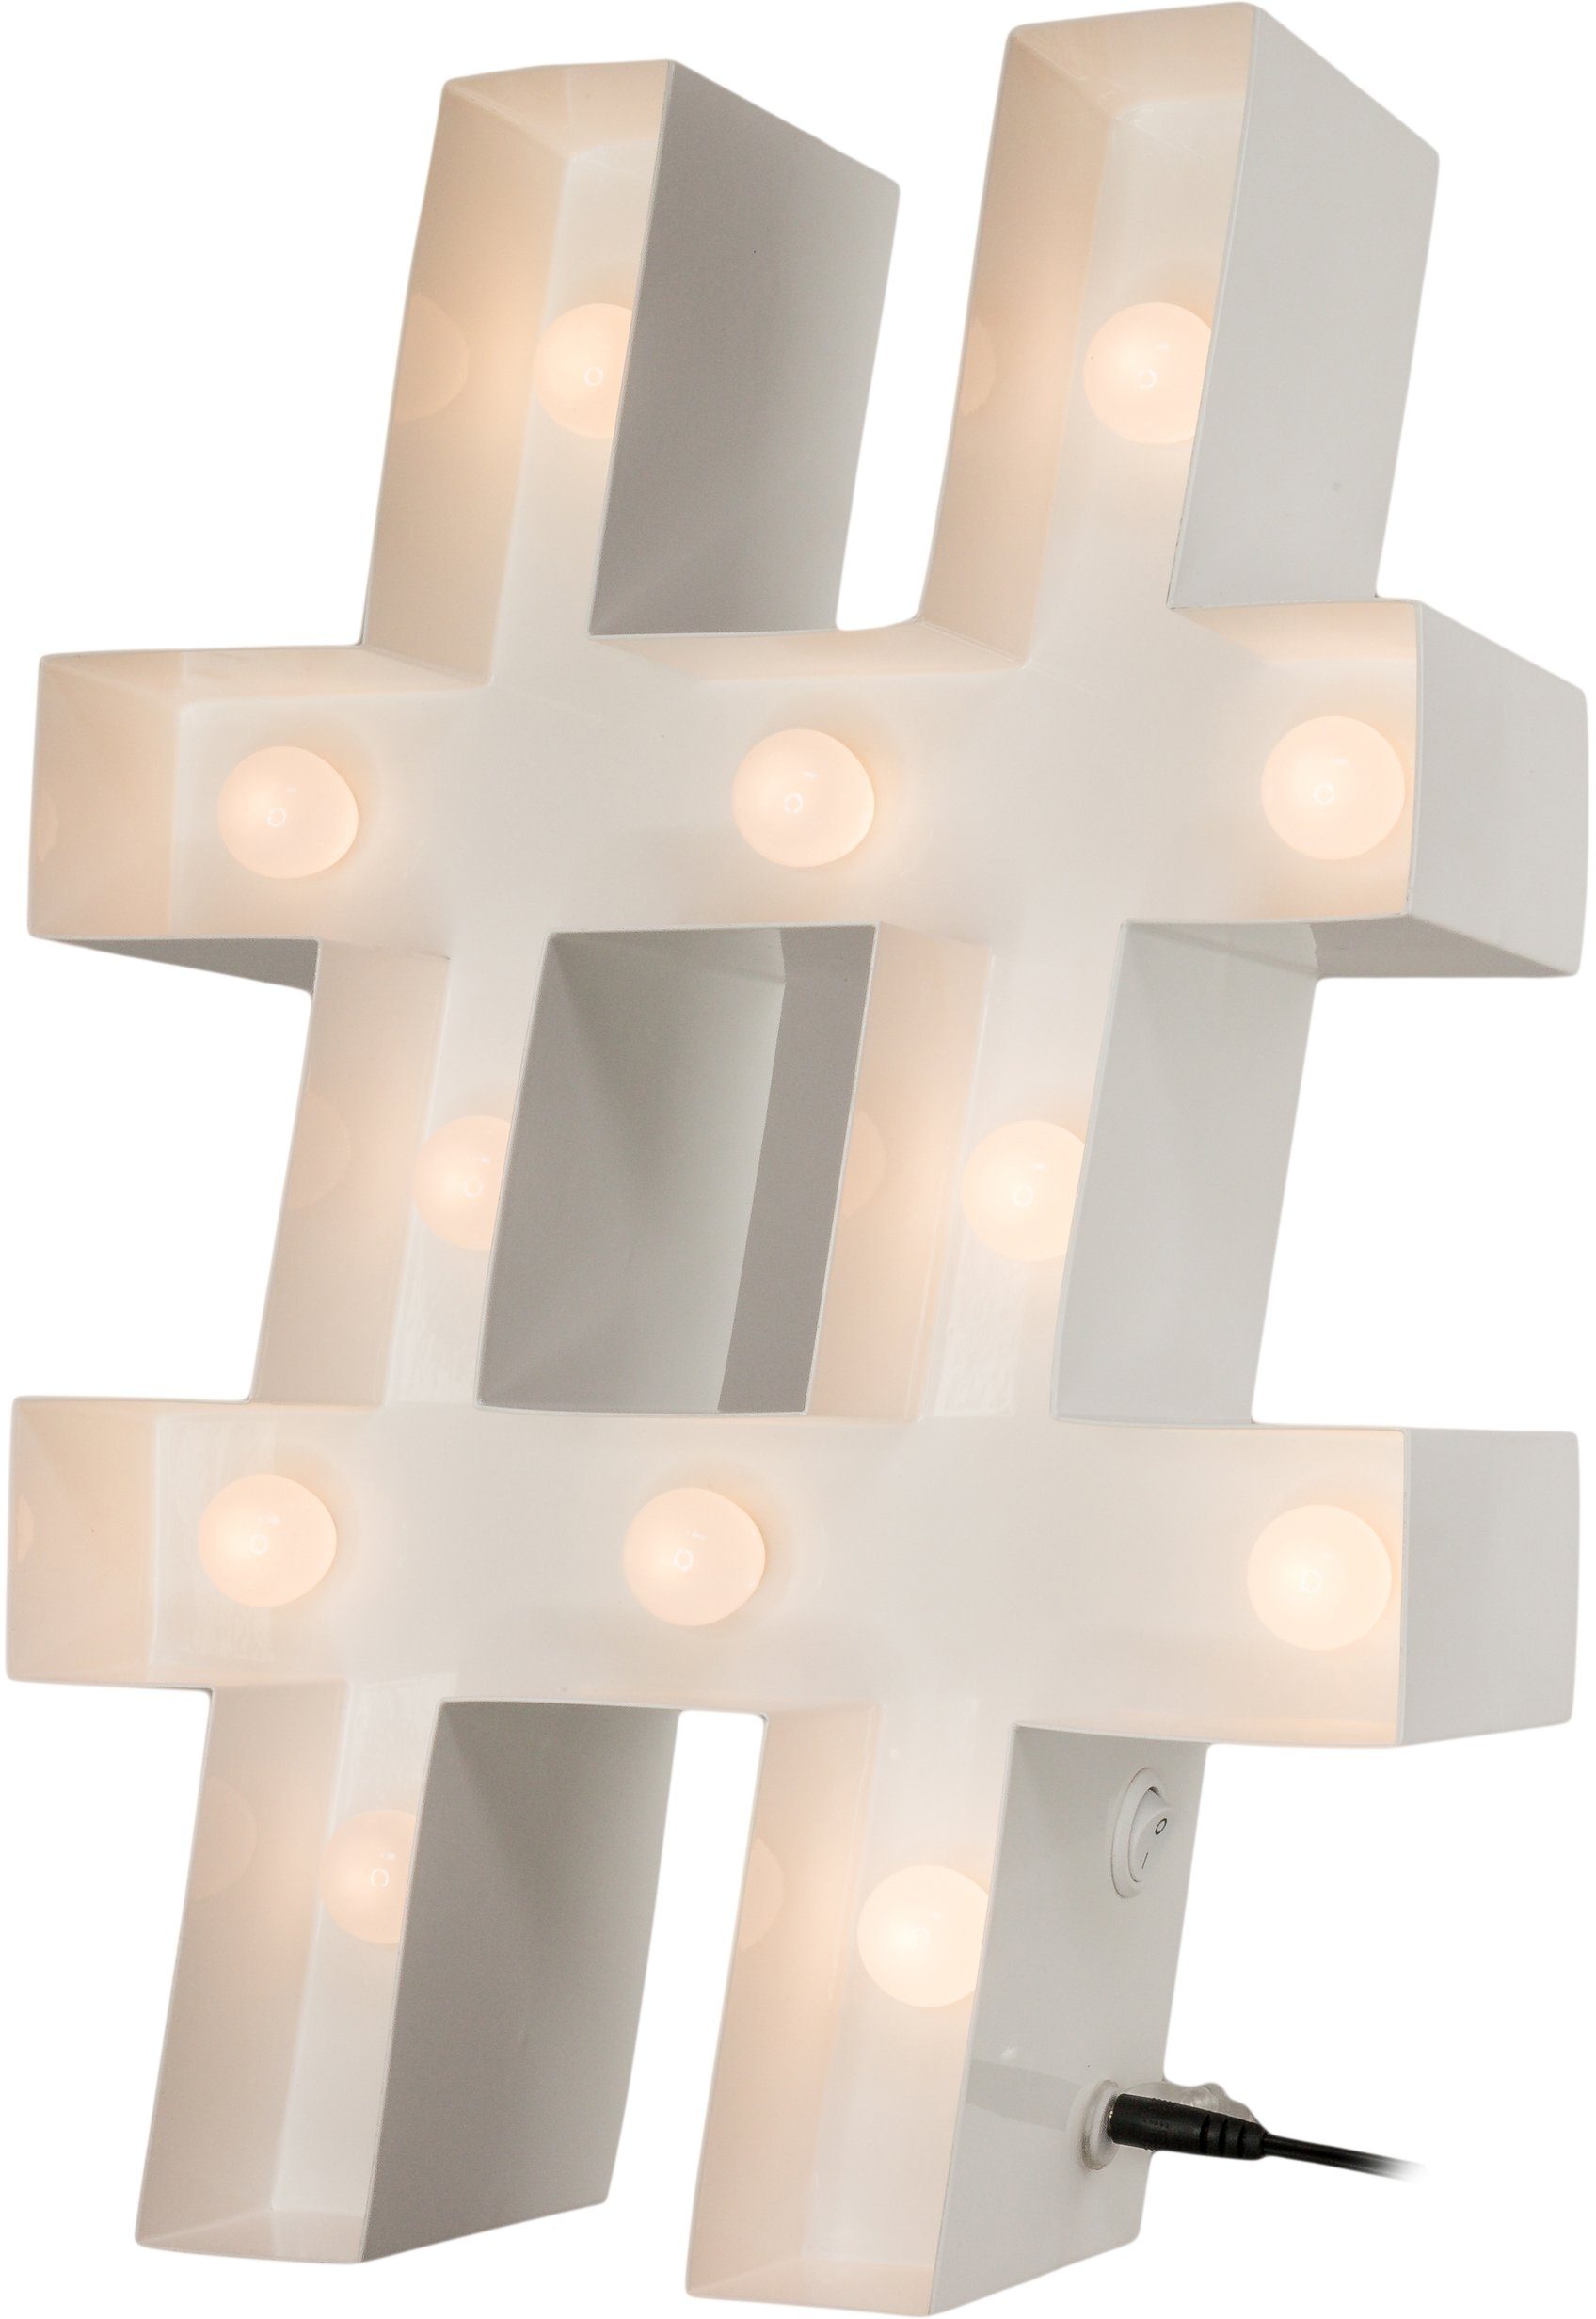 MARQUEE LIGHTS LED LED fest Hashtag, cm 26x38 integriert, Hashtag - Tischlampe Wandlampe, Dekolicht Warmweiß, mit 12 festverbauten LEDs